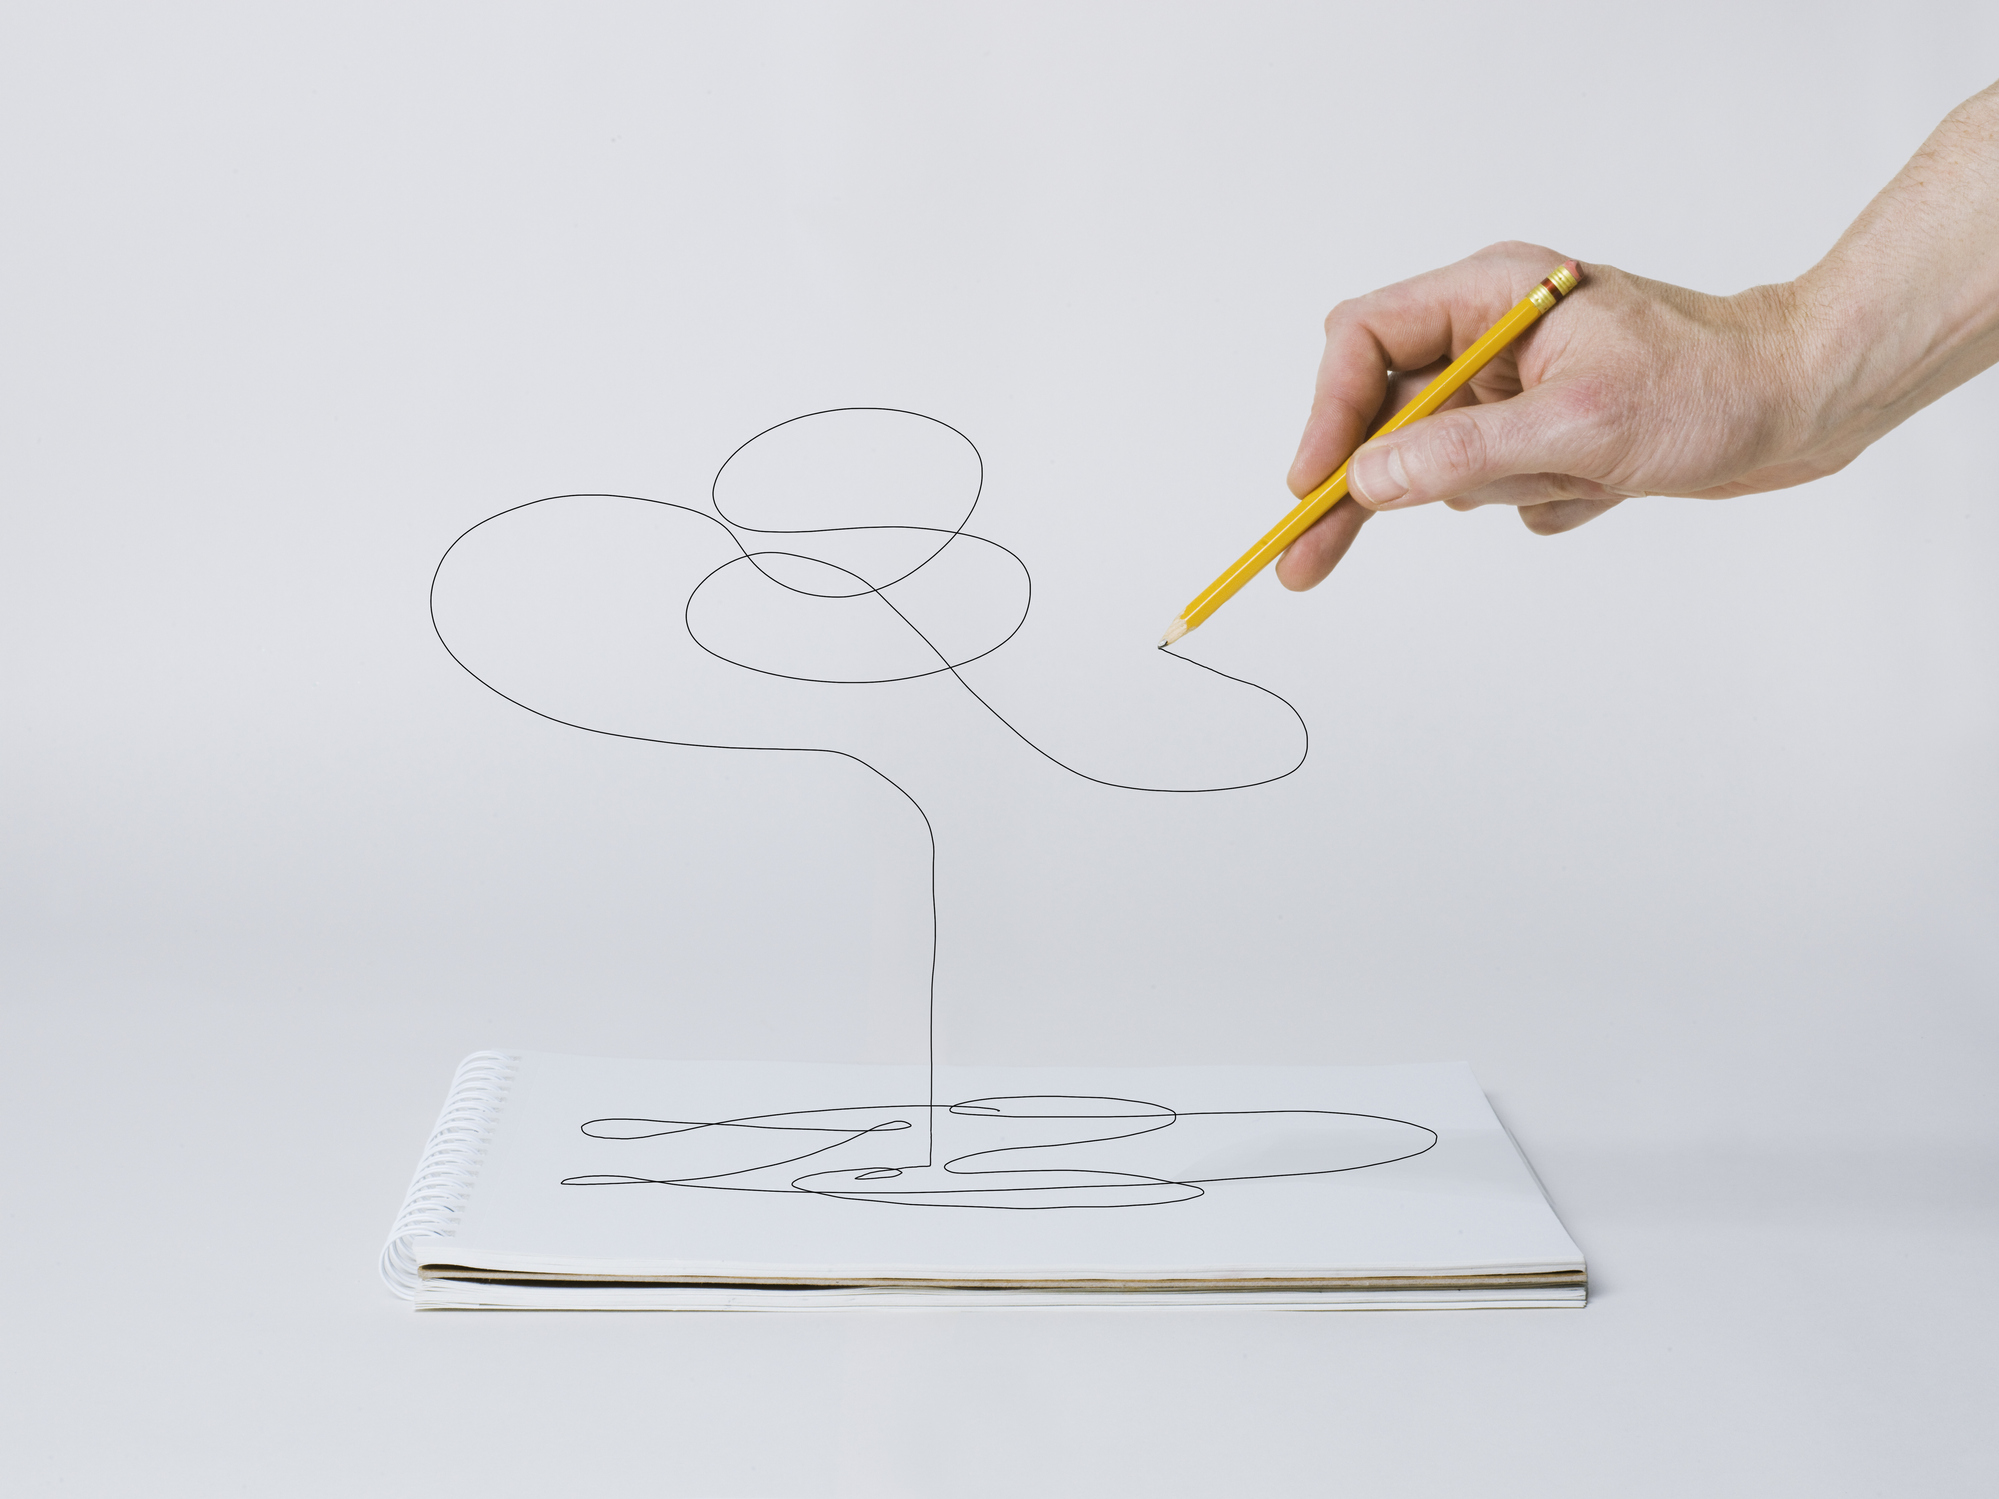 Čačke, narisane s svinčnikom, magnetna sila dviga iz lista papirja v zrak.